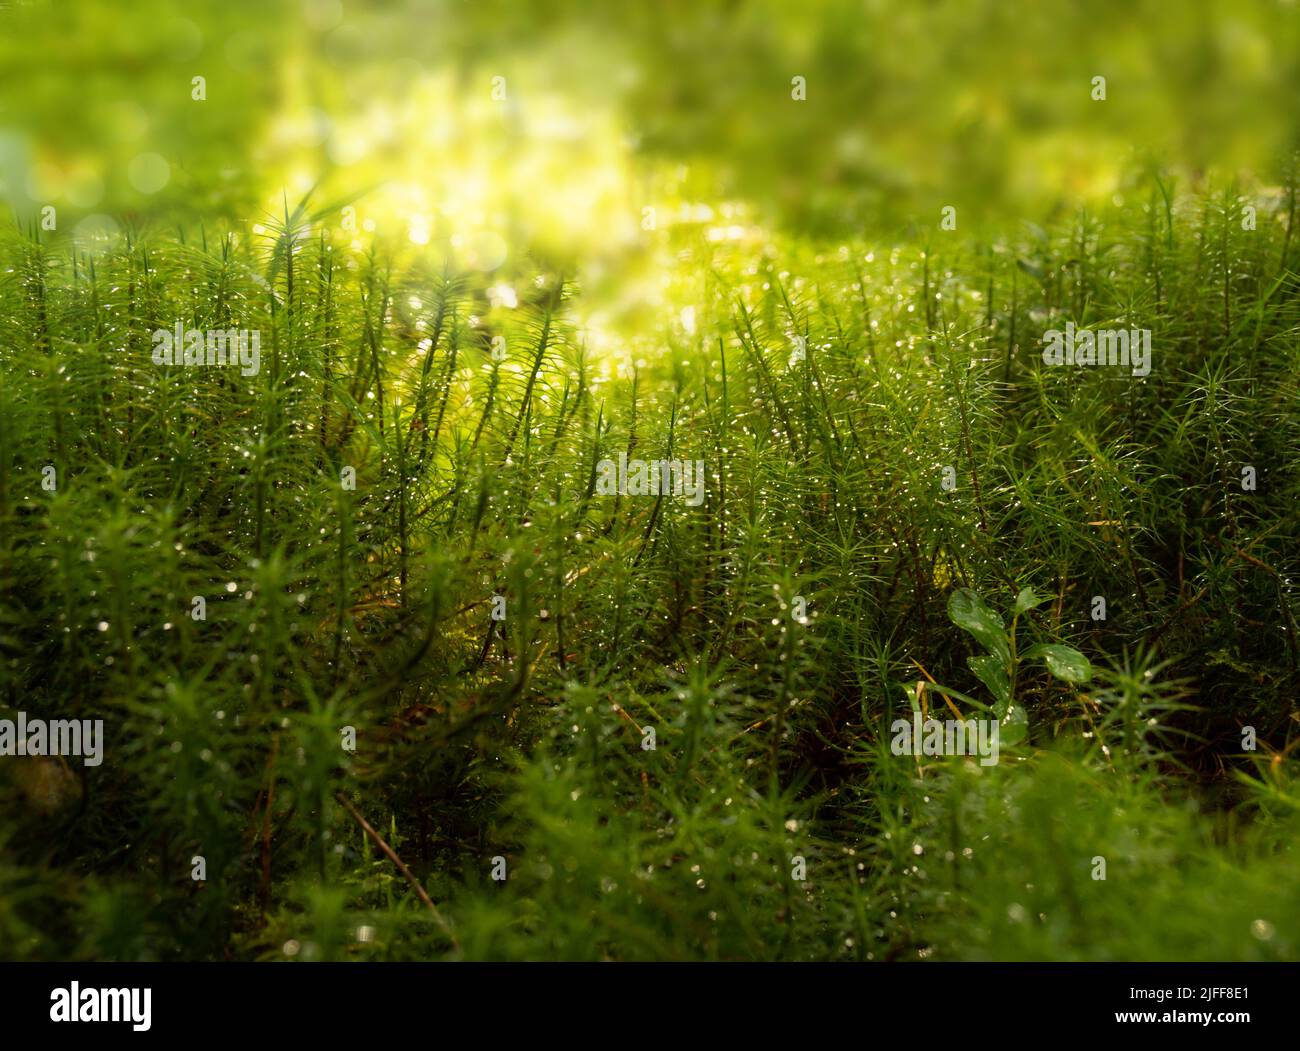 Bild mit grünem Gras Waldwiese auf hellem Hintergrund. Naturlandschaft. Tapetenform. Sommerlicht. Stockfoto